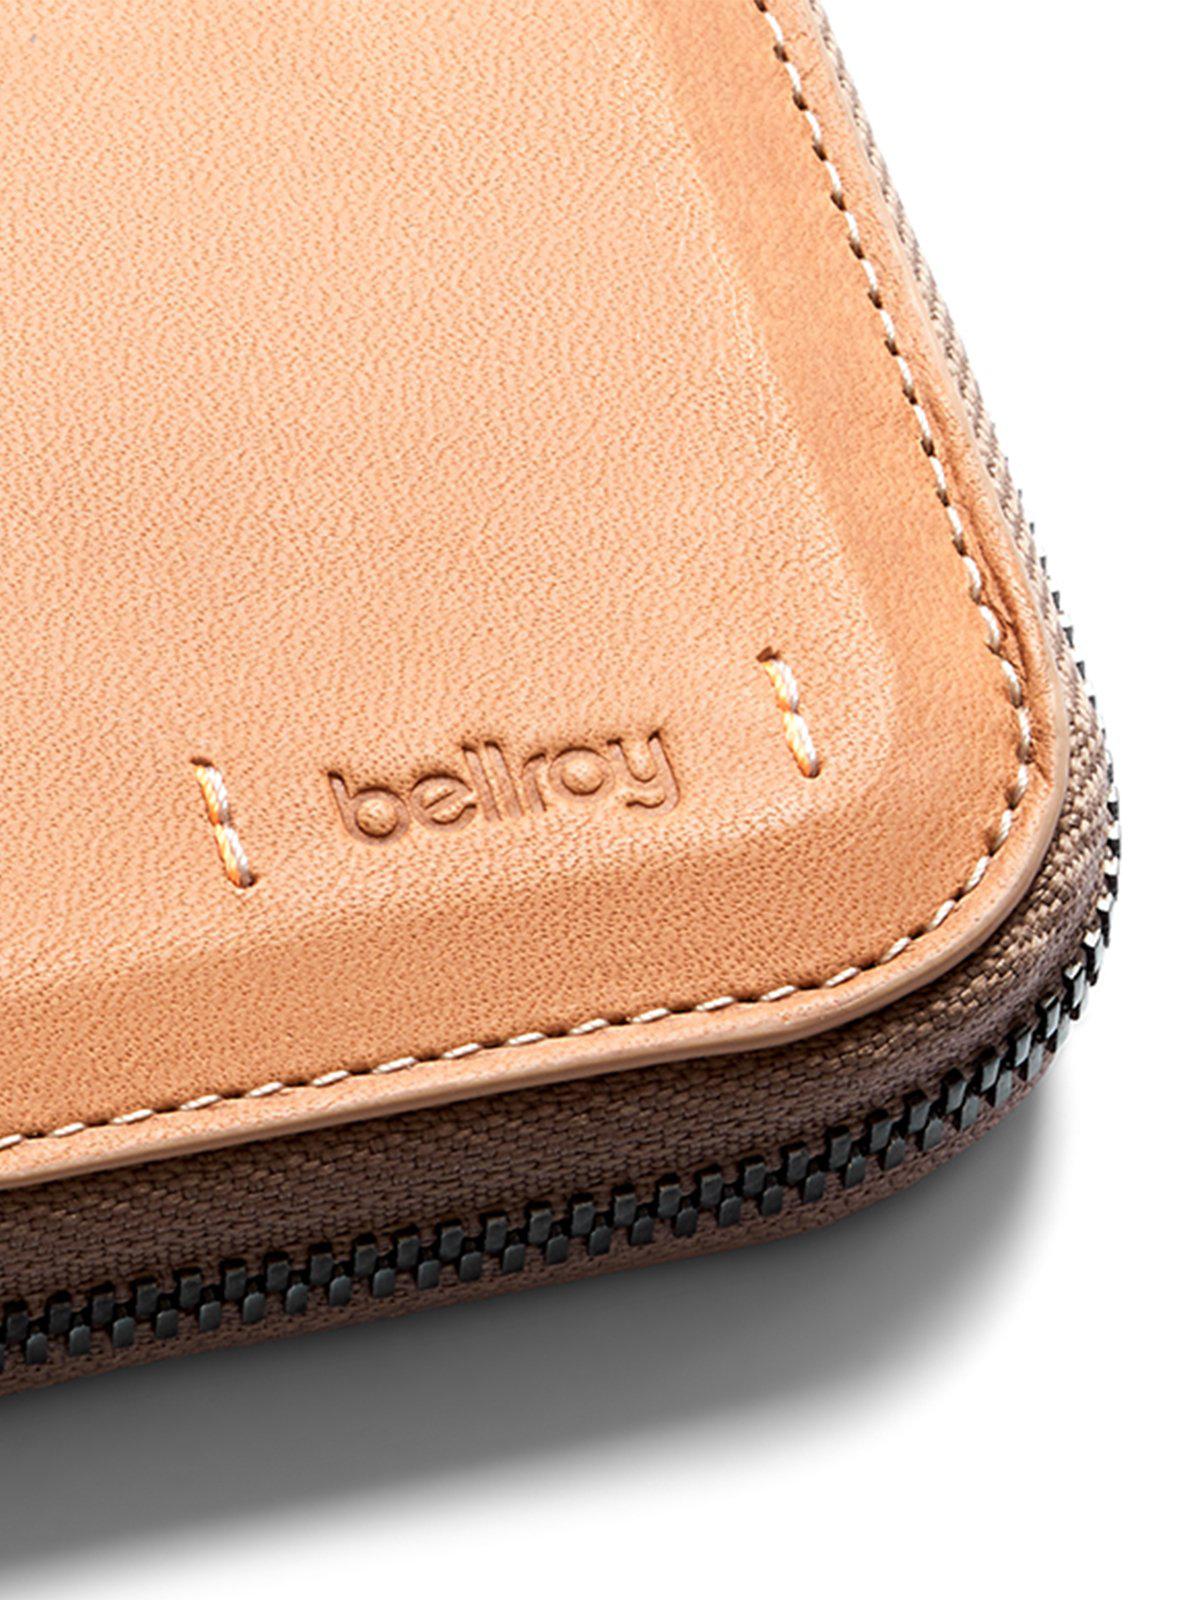 Bellroy Zip Wallet Premium Edition Natural RFID